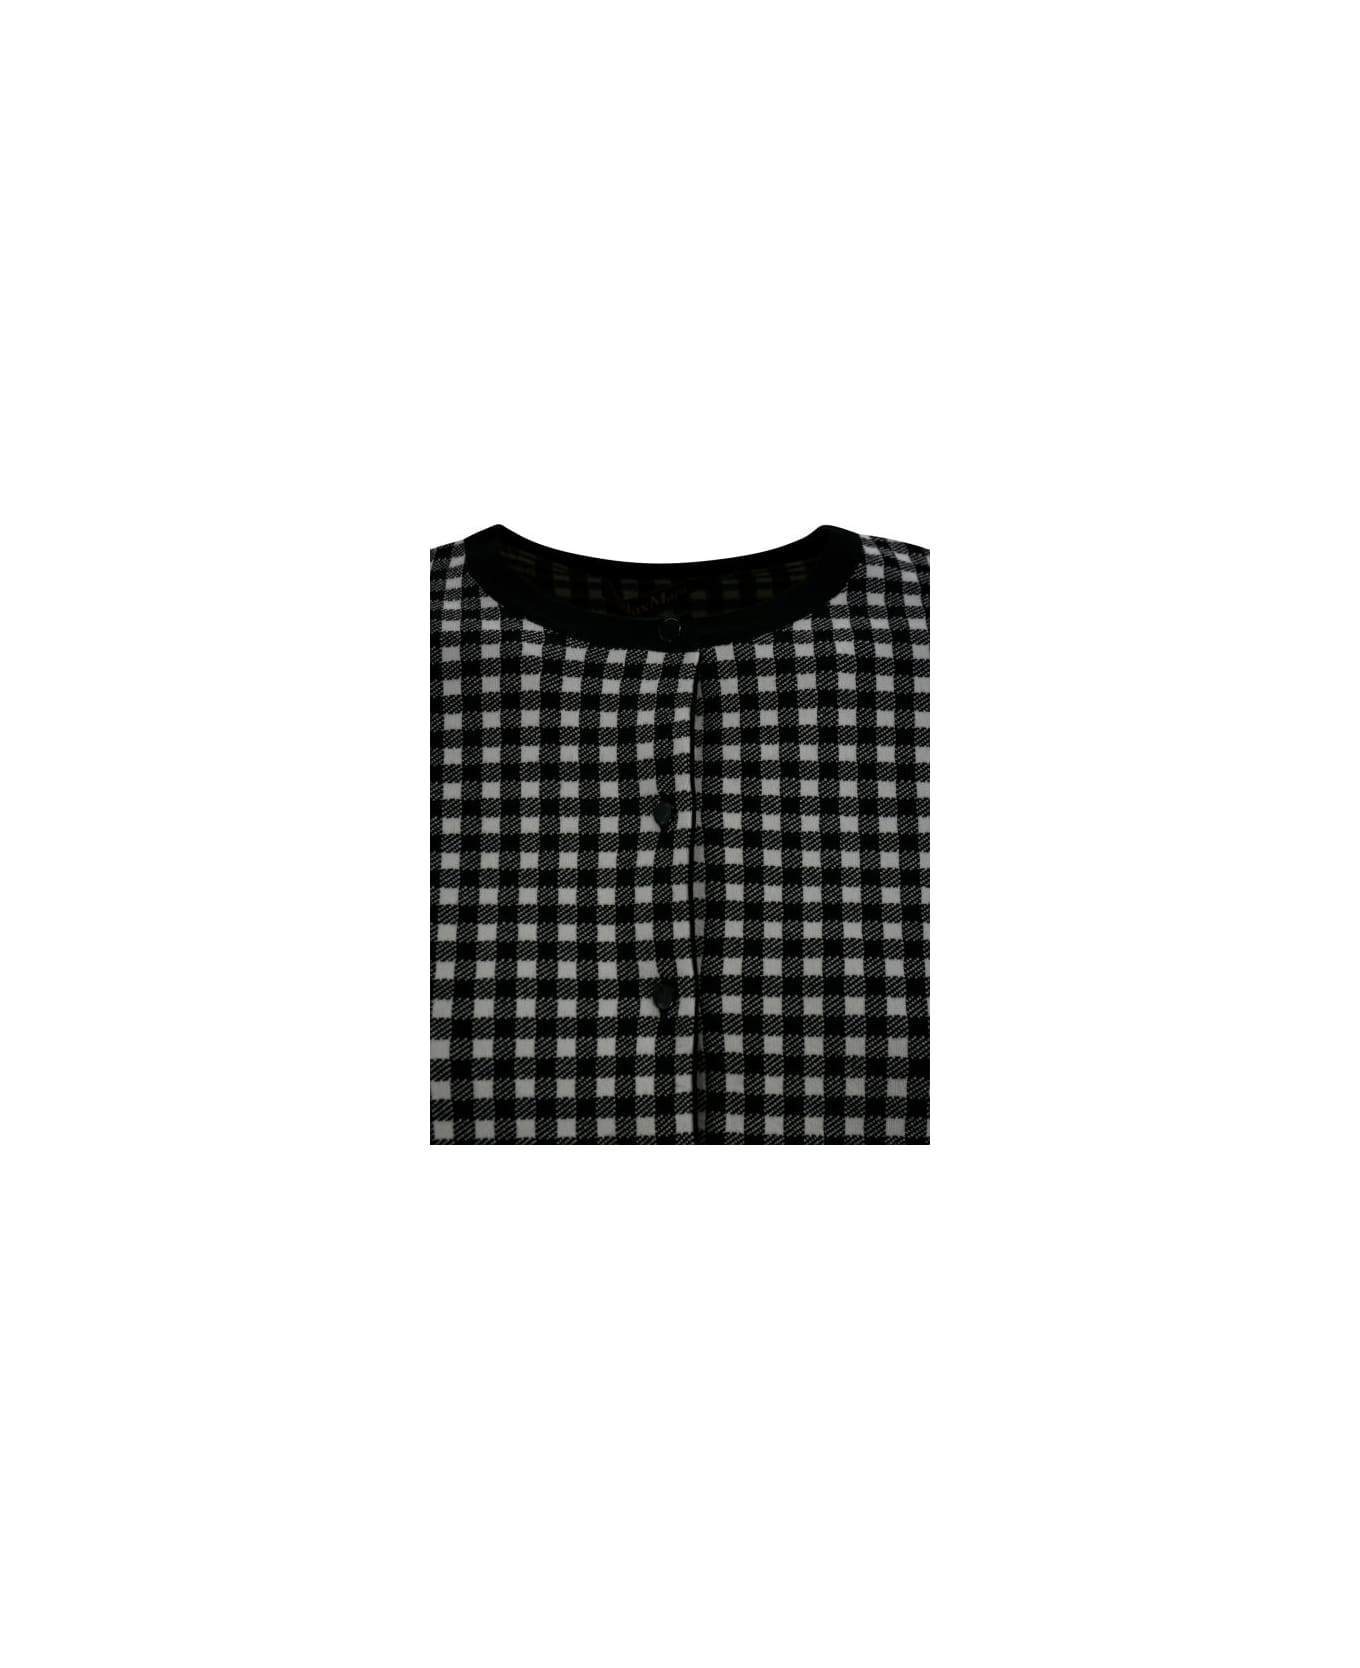 Max Mara Studio Vintage Long-sleeved T-shirt - Vichy bianco e nero カーディガン